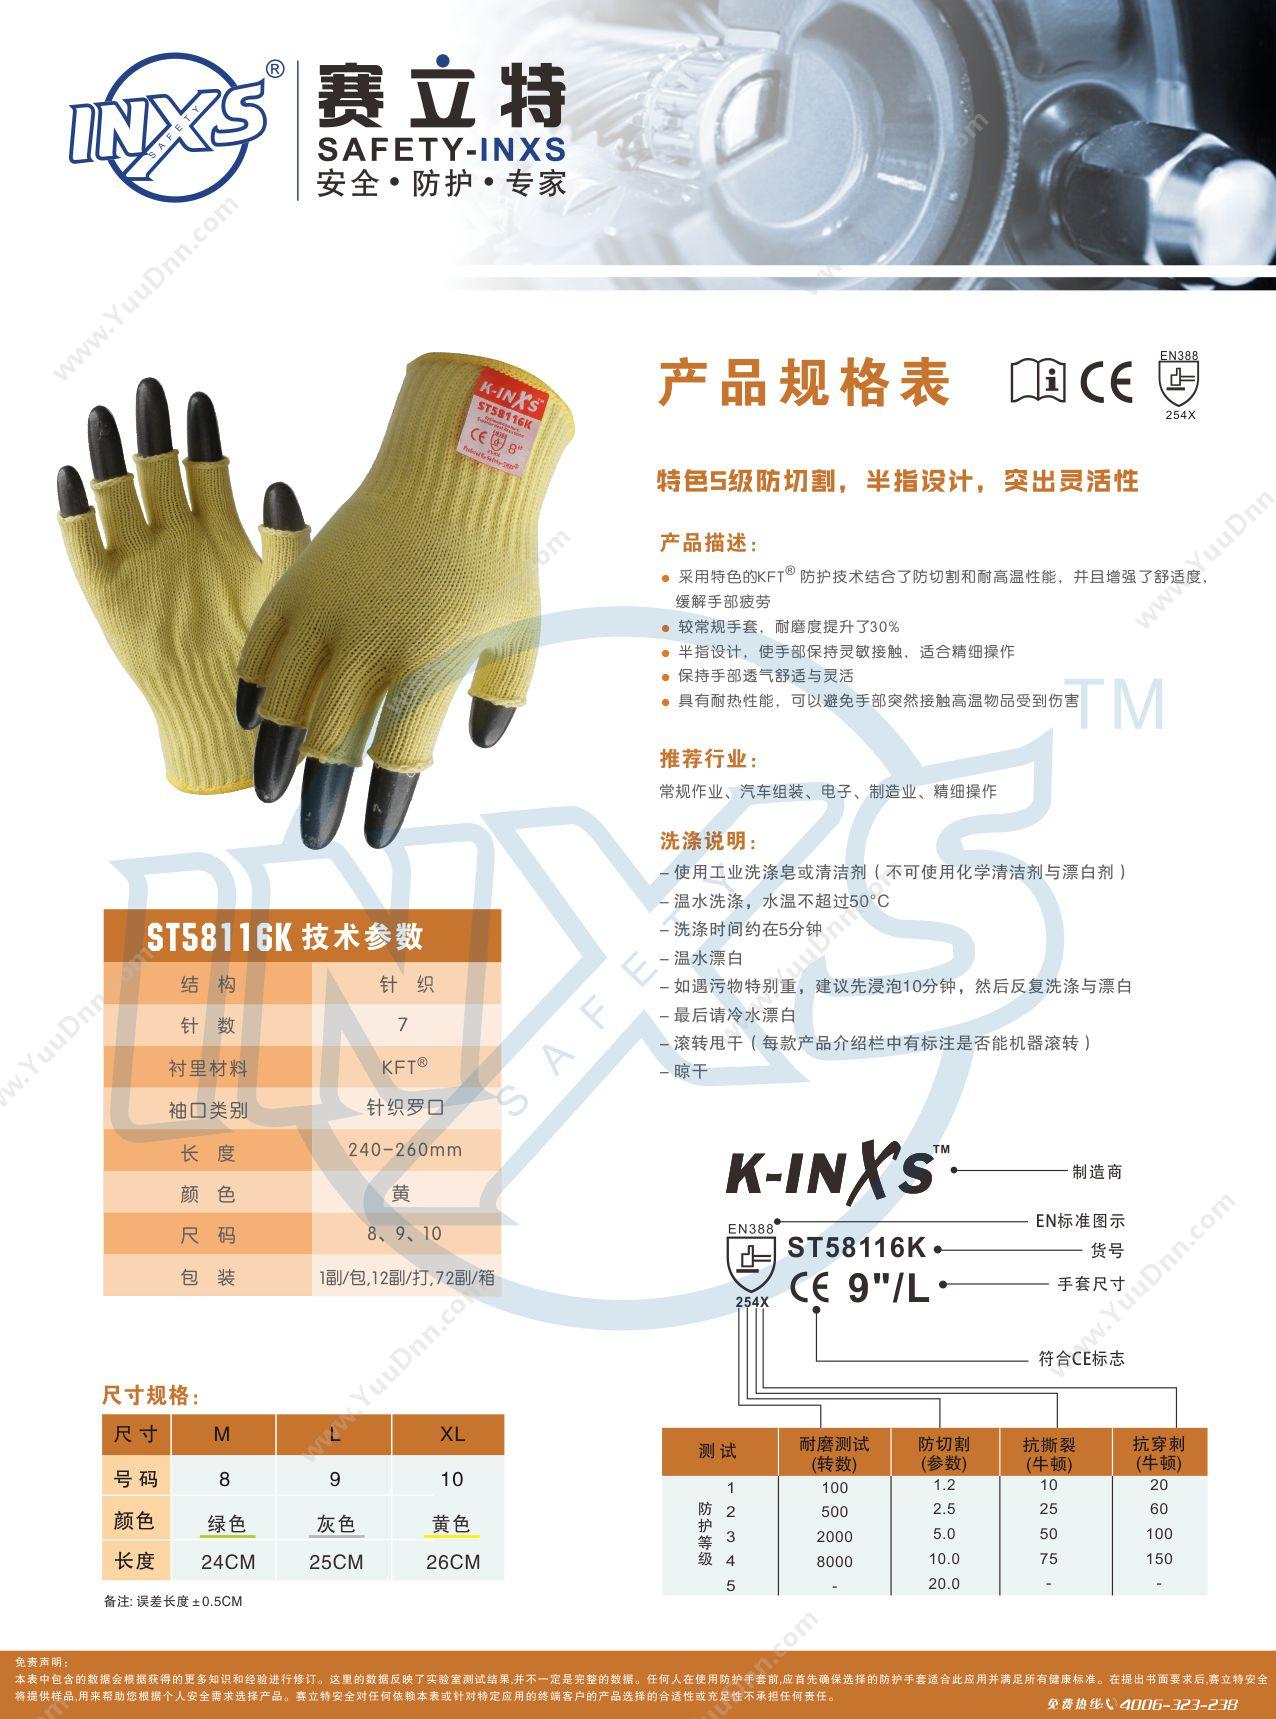 赛立特 Safety-inxs L22211K KFT功能性材料防切割5级针织乳胶涂层防护手套 M 防割手套